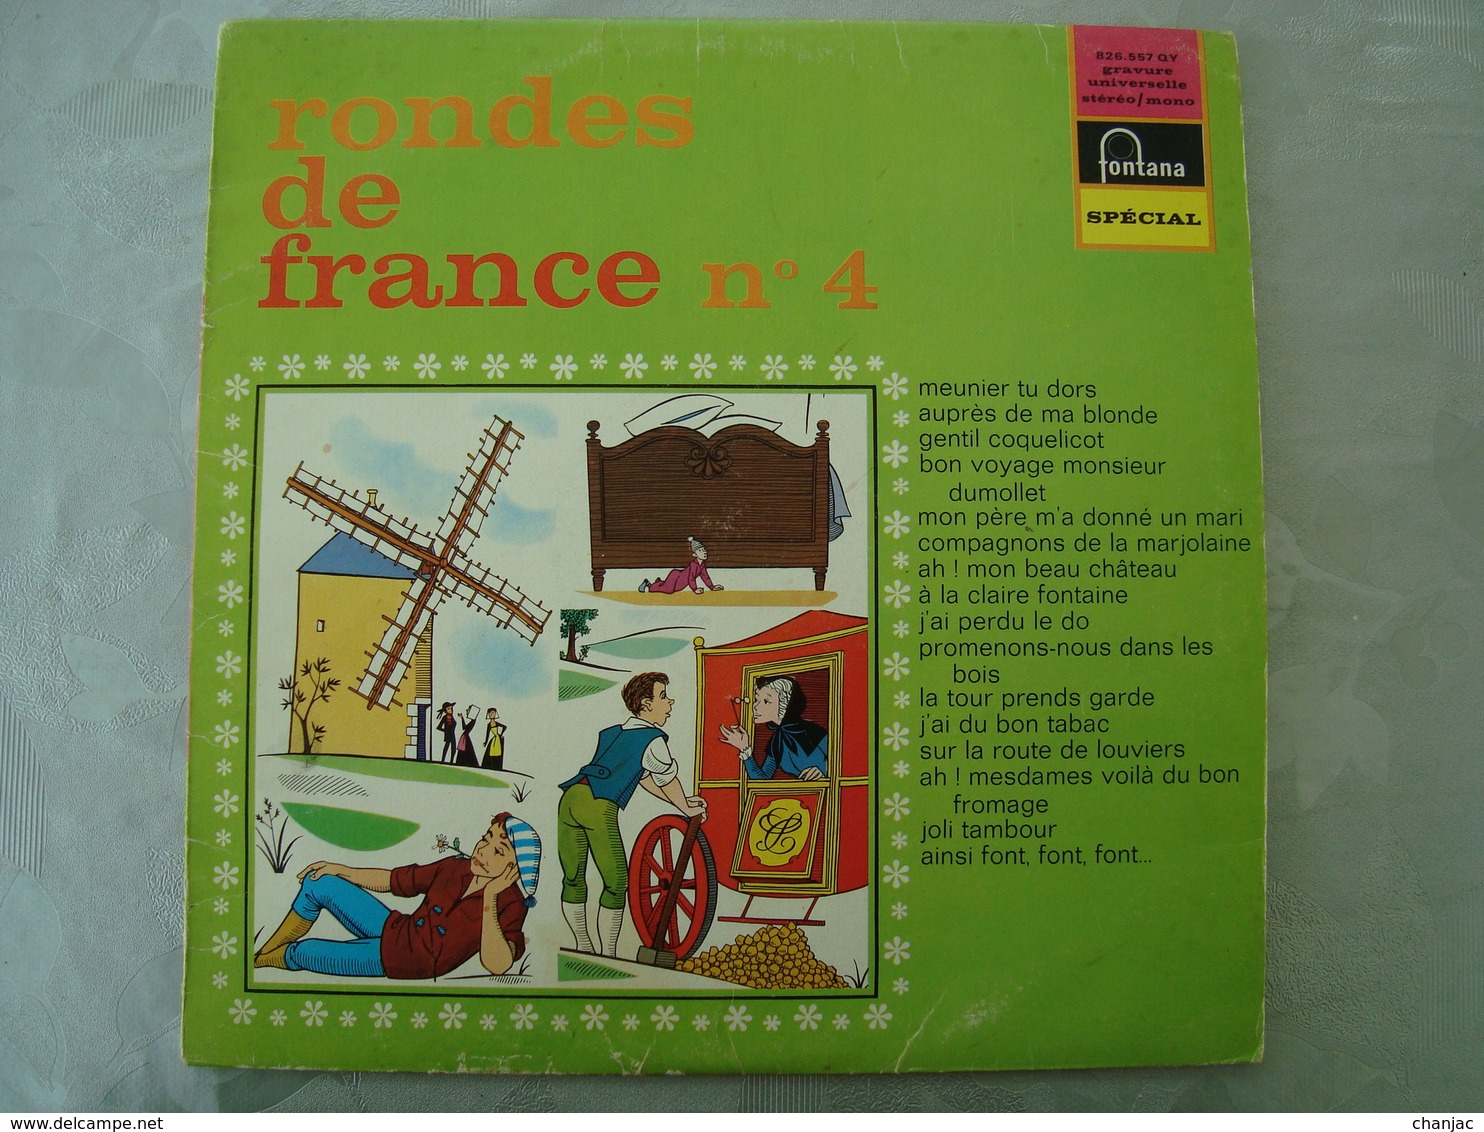 33 Tours: RONDES DE FRANCE N° 4 Meunier Tu Dors - Fontana 826.557 QY - Maitrise De L'O.R.T.F - Kinderlieder